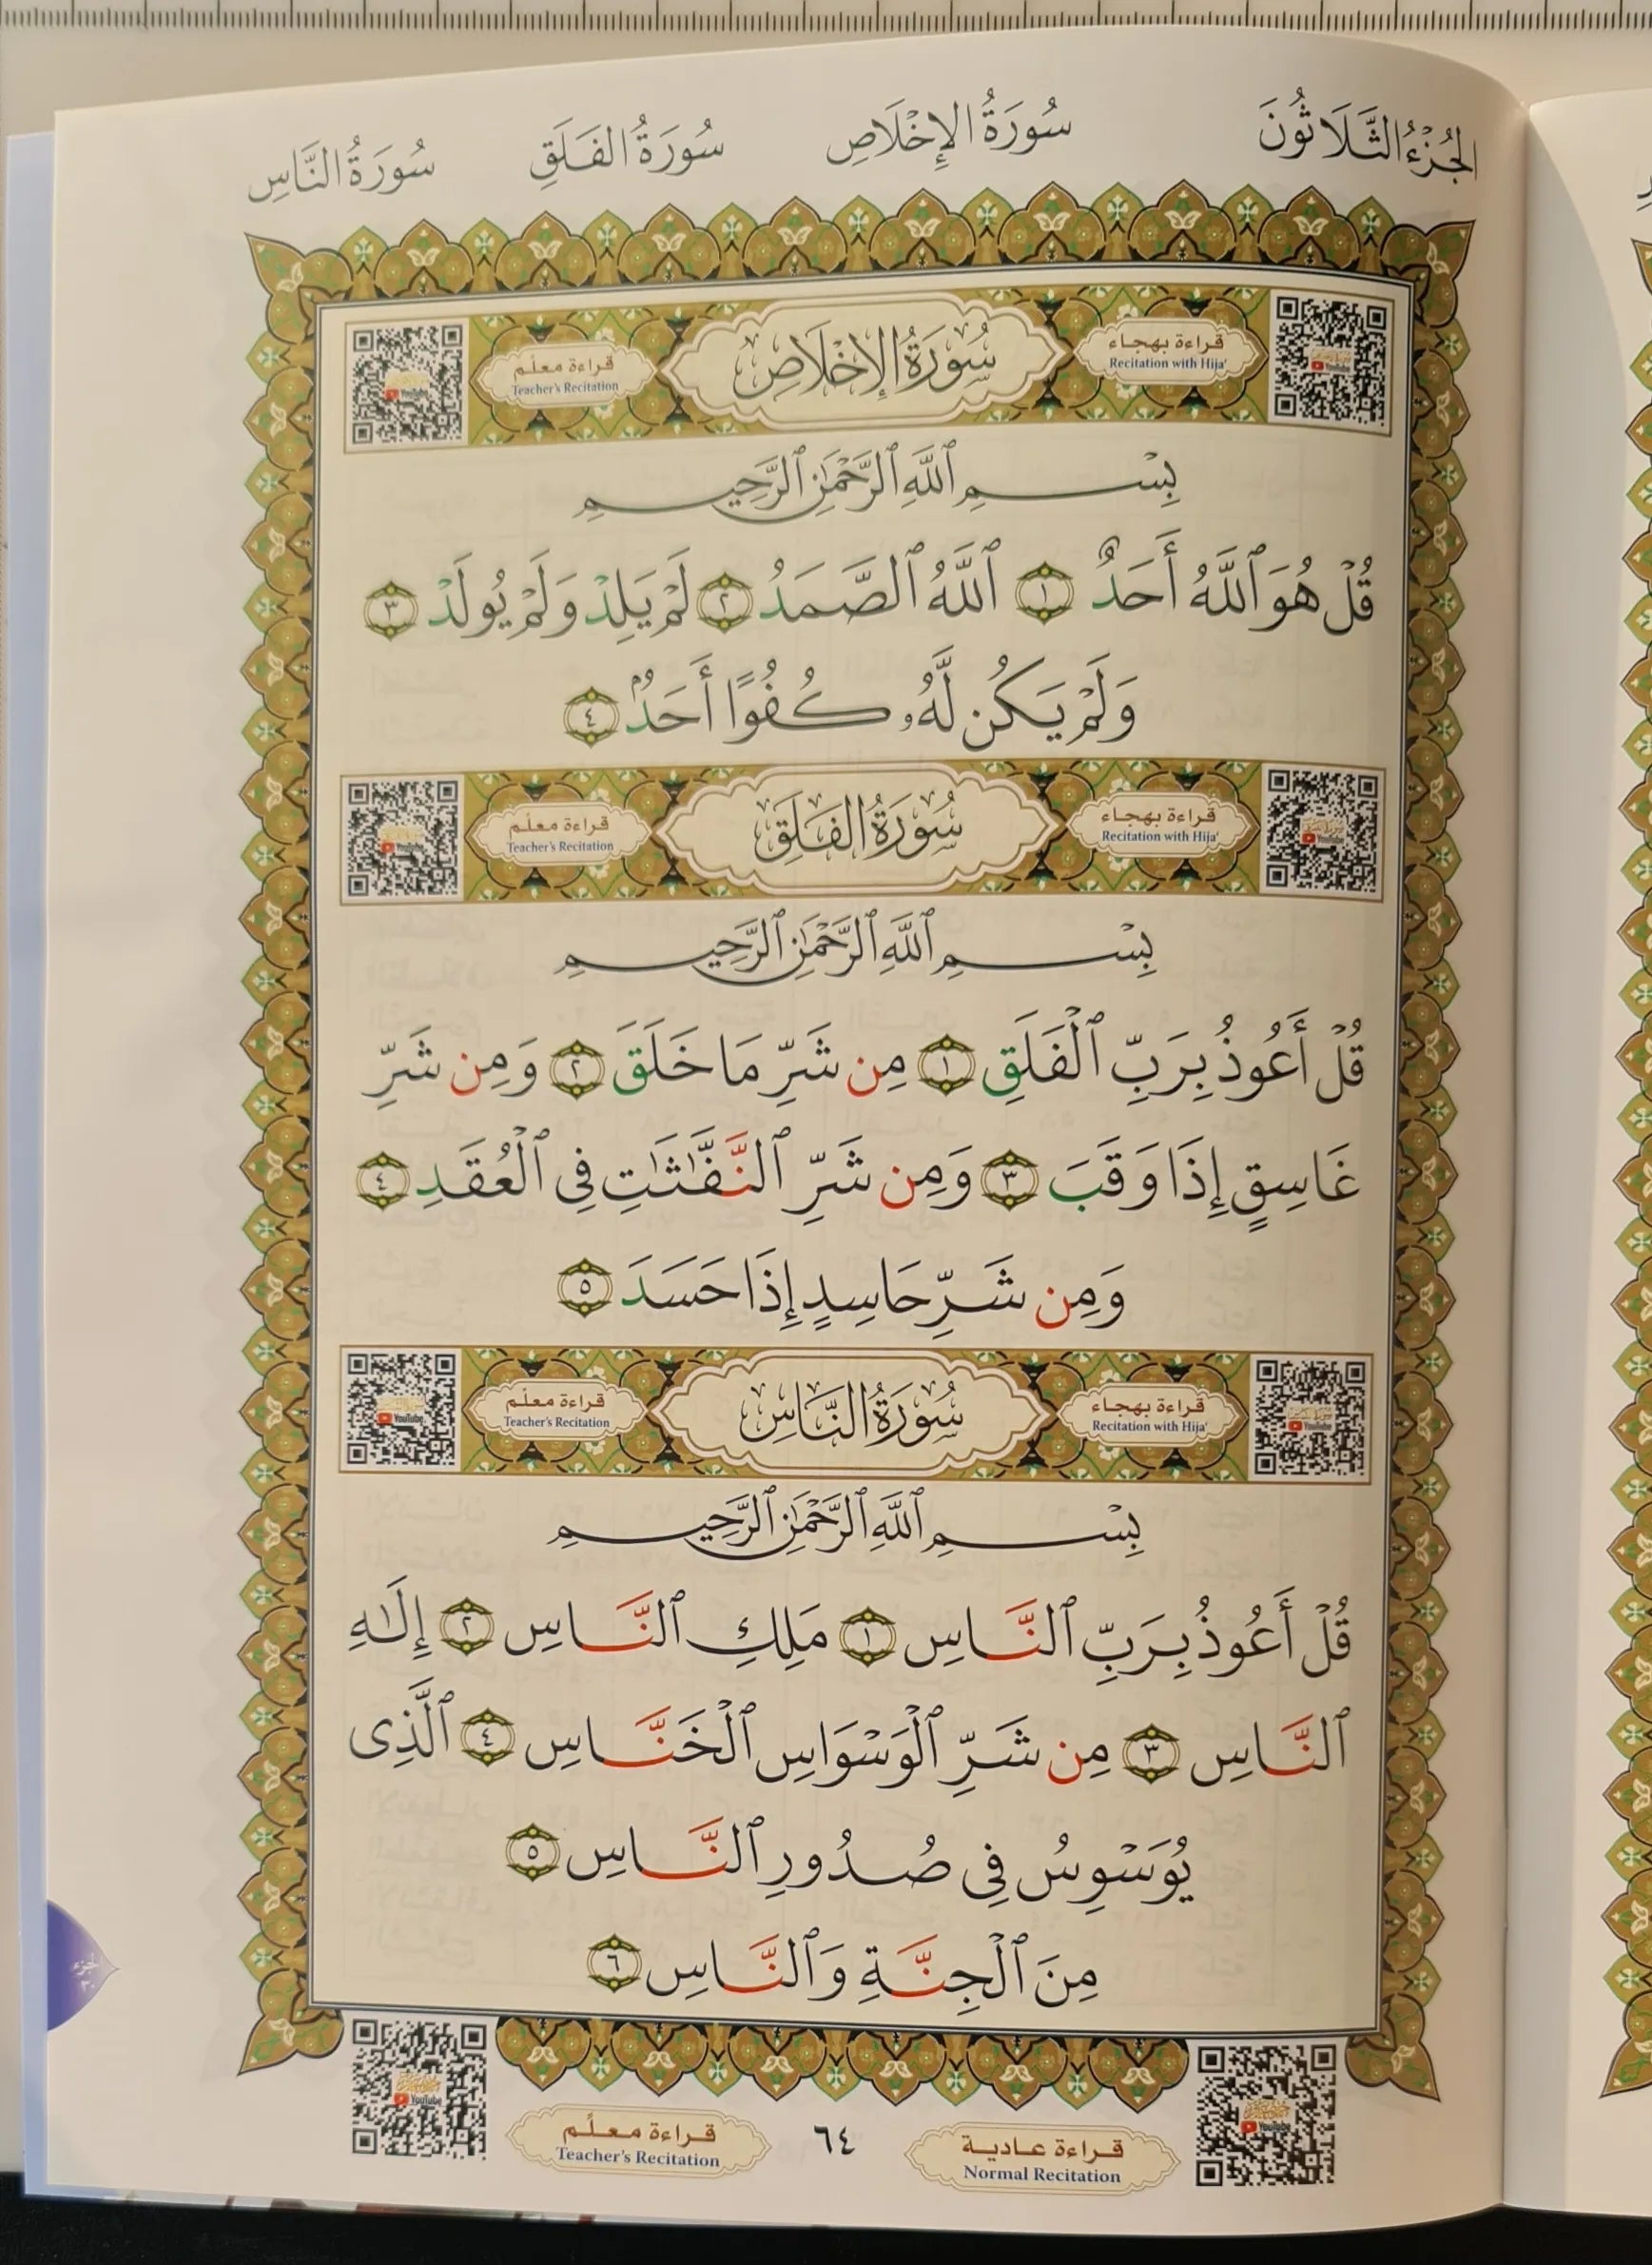 De laatste tiende van de Koran - Nourania Klein formaat - Al-Ouchrou Al-akhir (Juzz Qad Sami-a) 